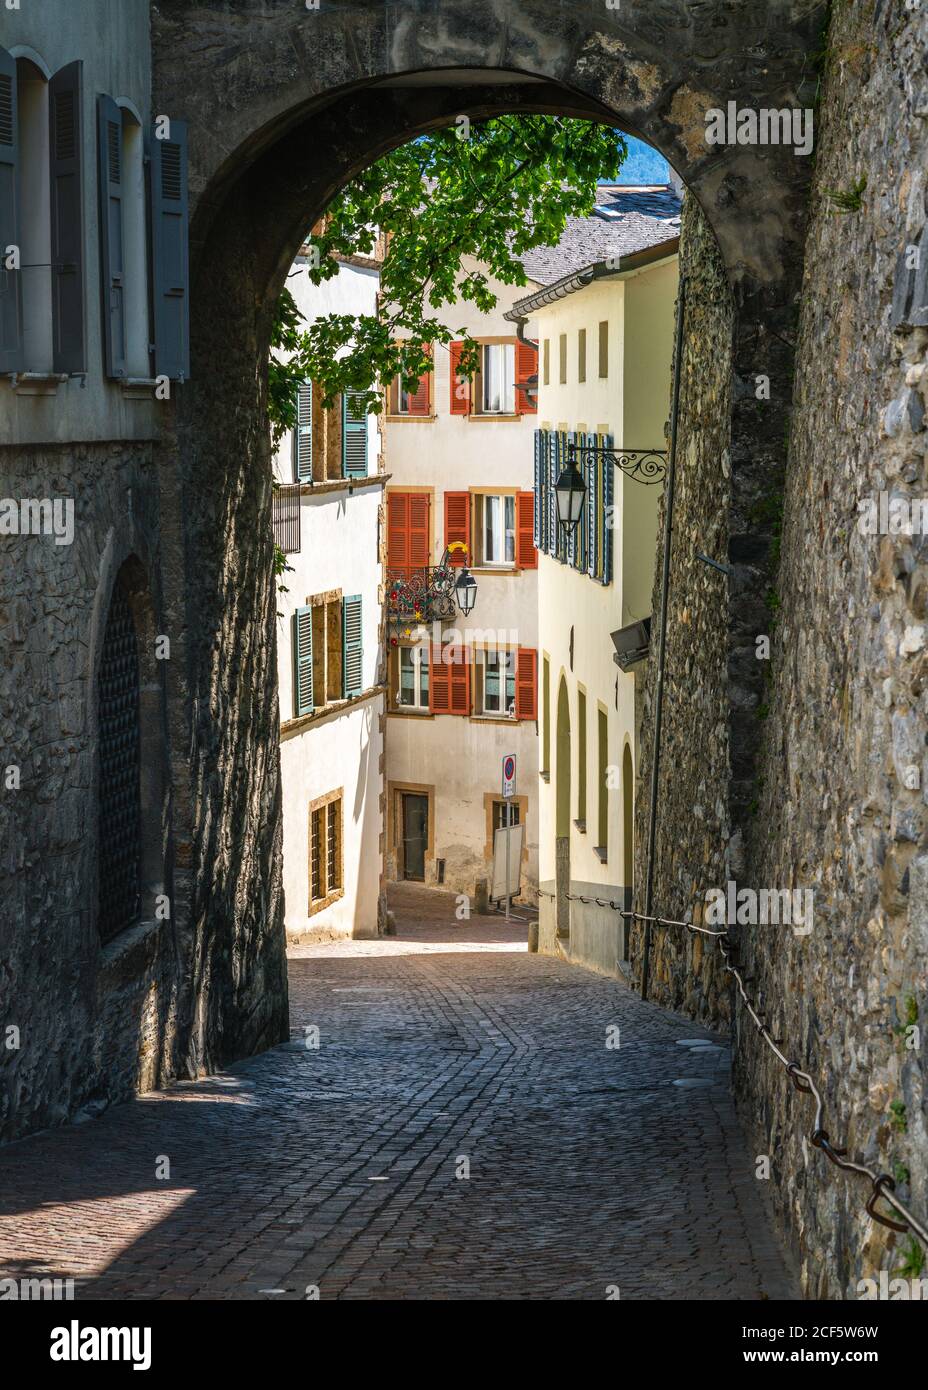 Sion Altstadt vertikale Ansicht mit szenischen Fußgängerweg mit Gepflasterte Straße und mittelalterliche Bogen und Gebäude in Sion Wallis Schweiz Stockfoto